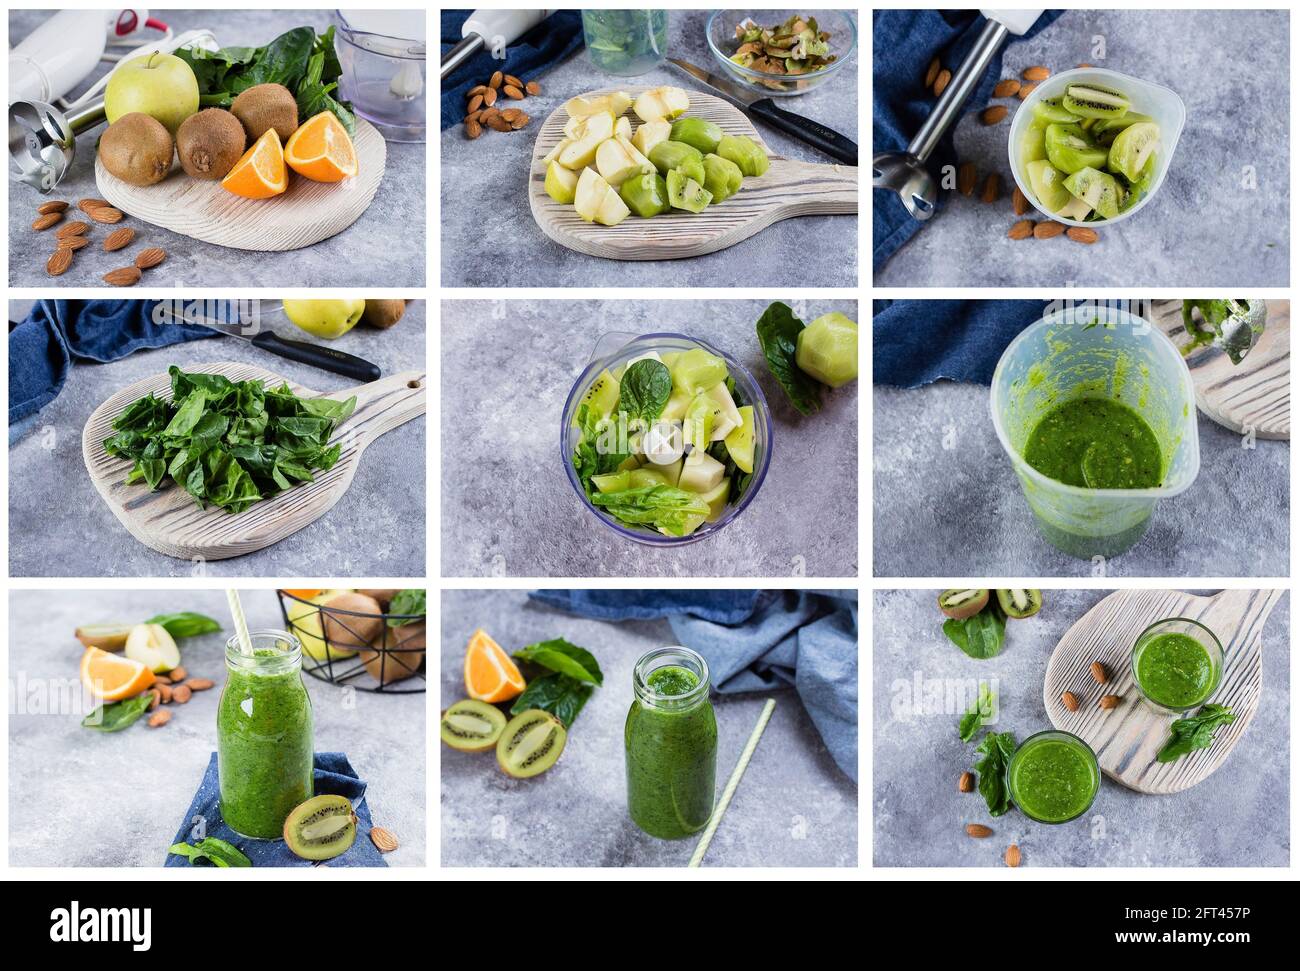 Collage de recetas paso a paso. Detox Dieting Concepto de bebida vegana.  Zumos verdes frescos o batidos en botella con frutas y almendra de nuez  sobre hormigón gris Fotografía de stock -